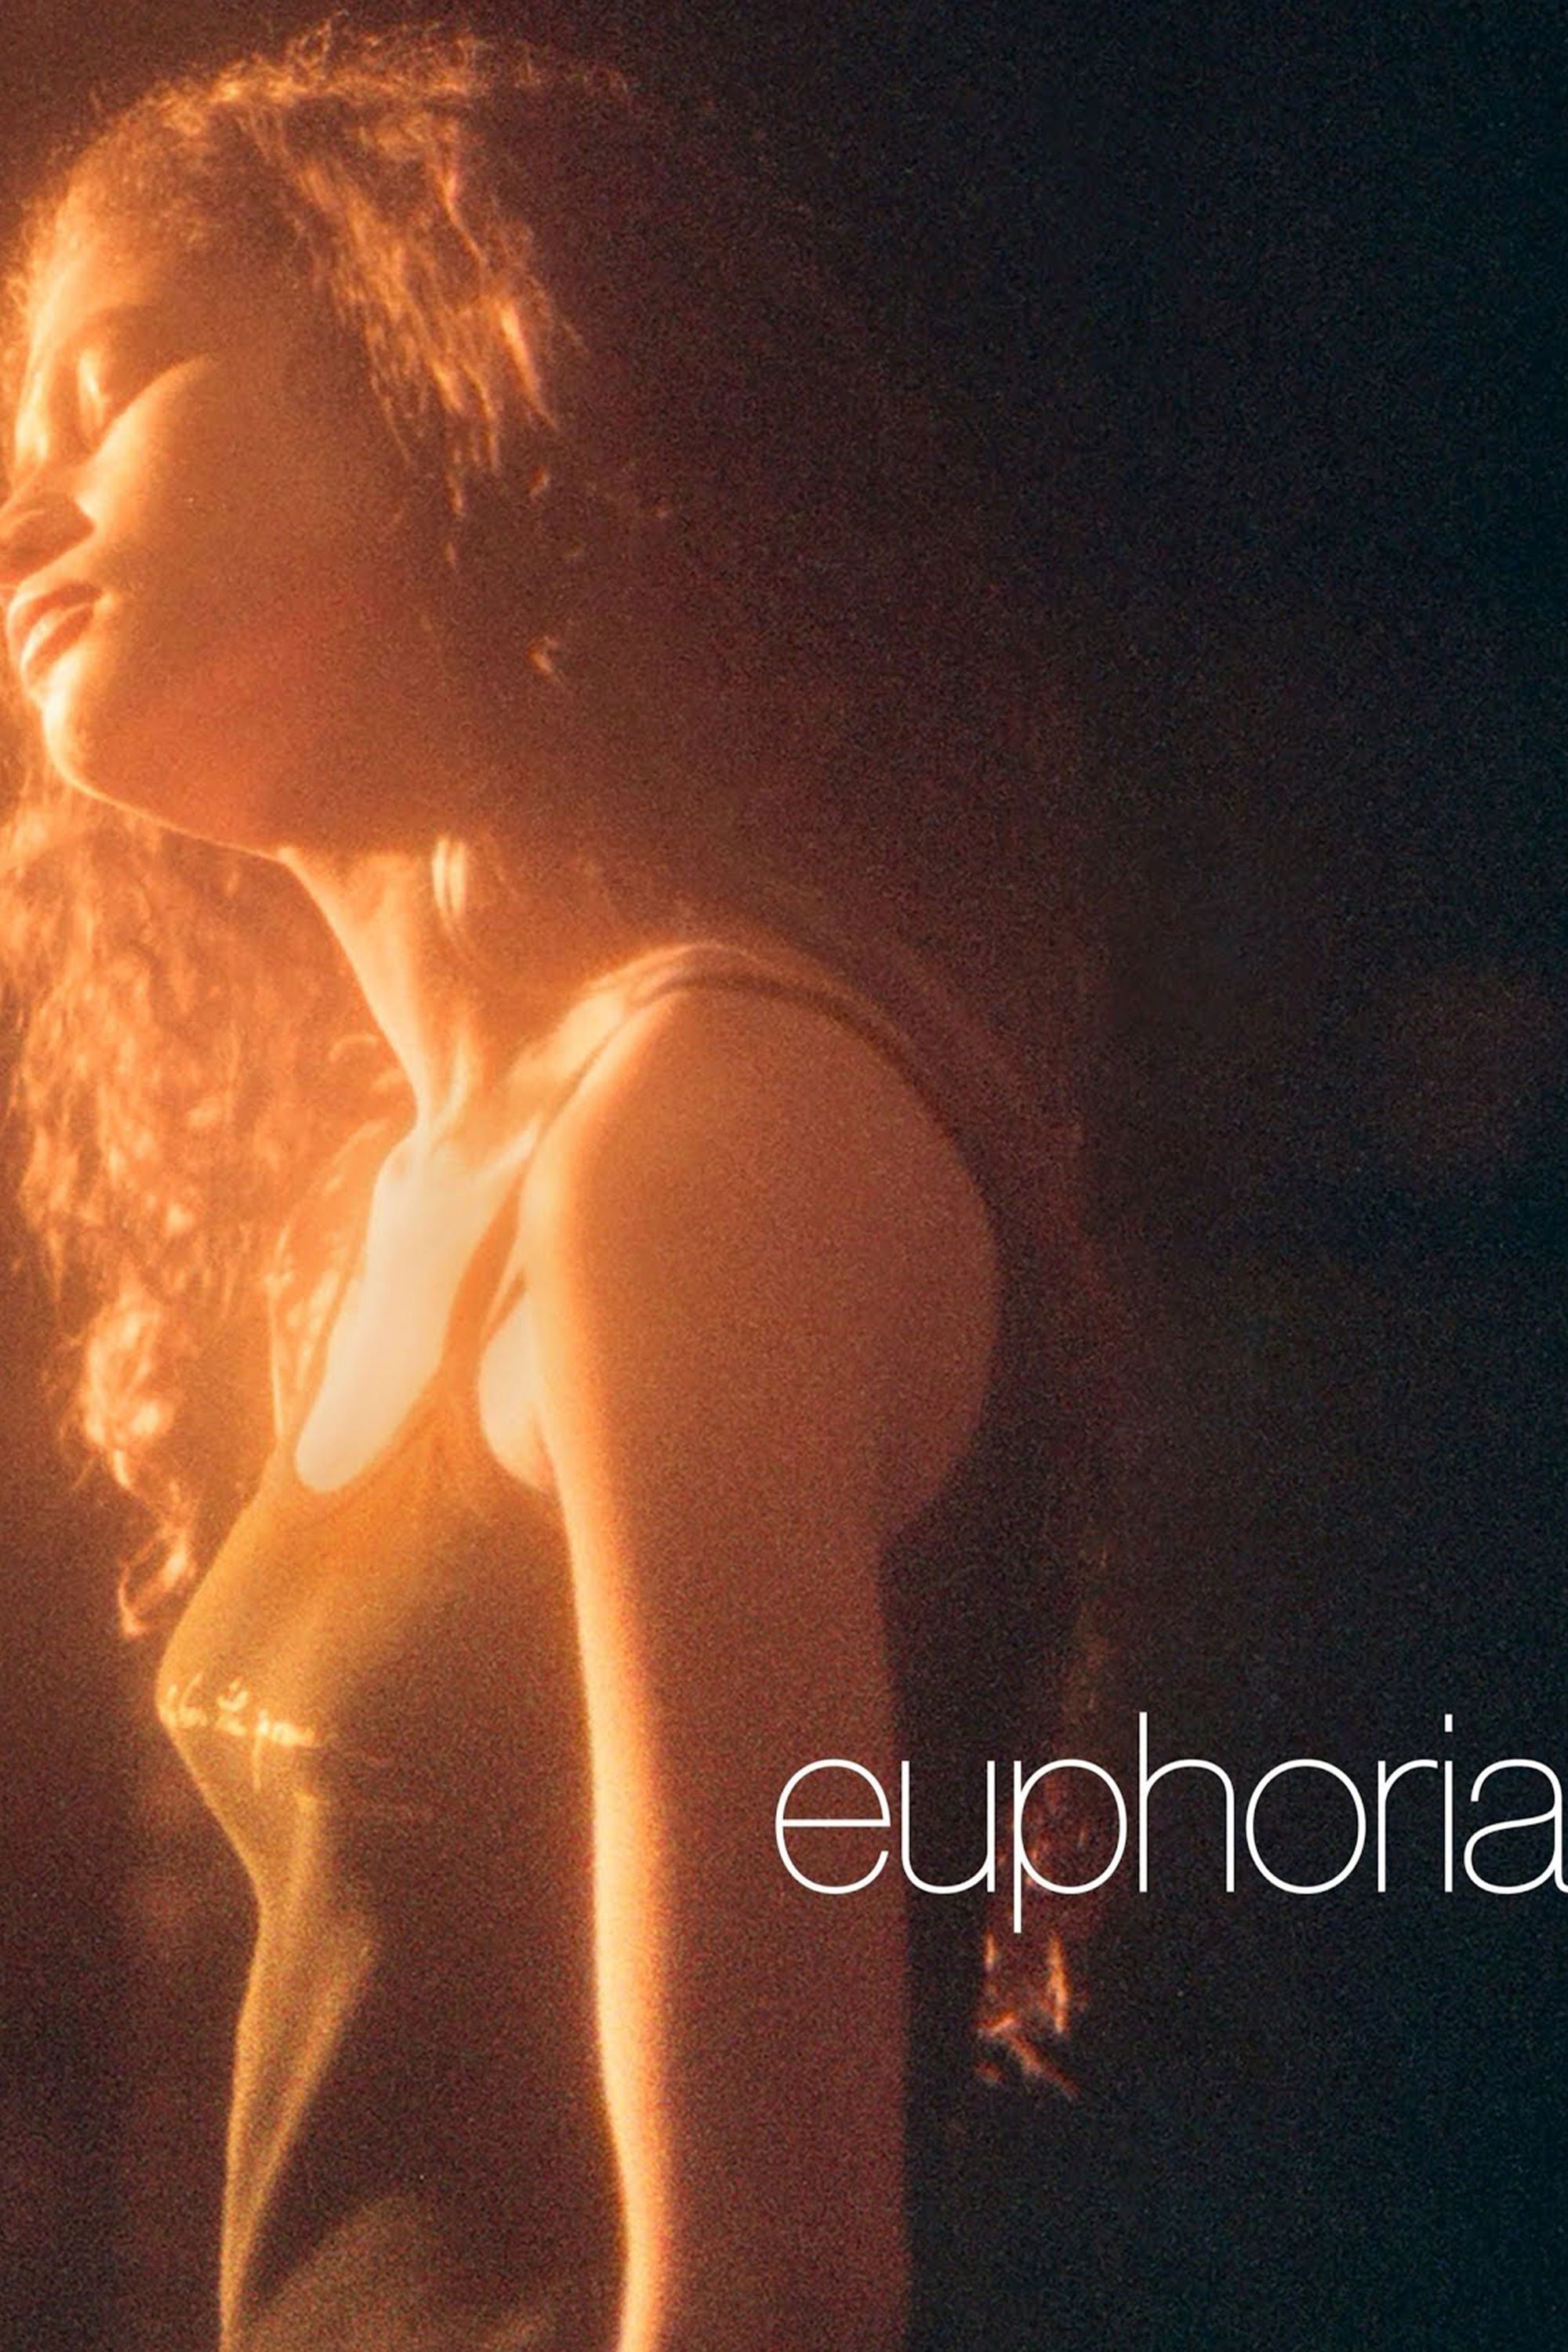 Euphoria 'Show' Poster